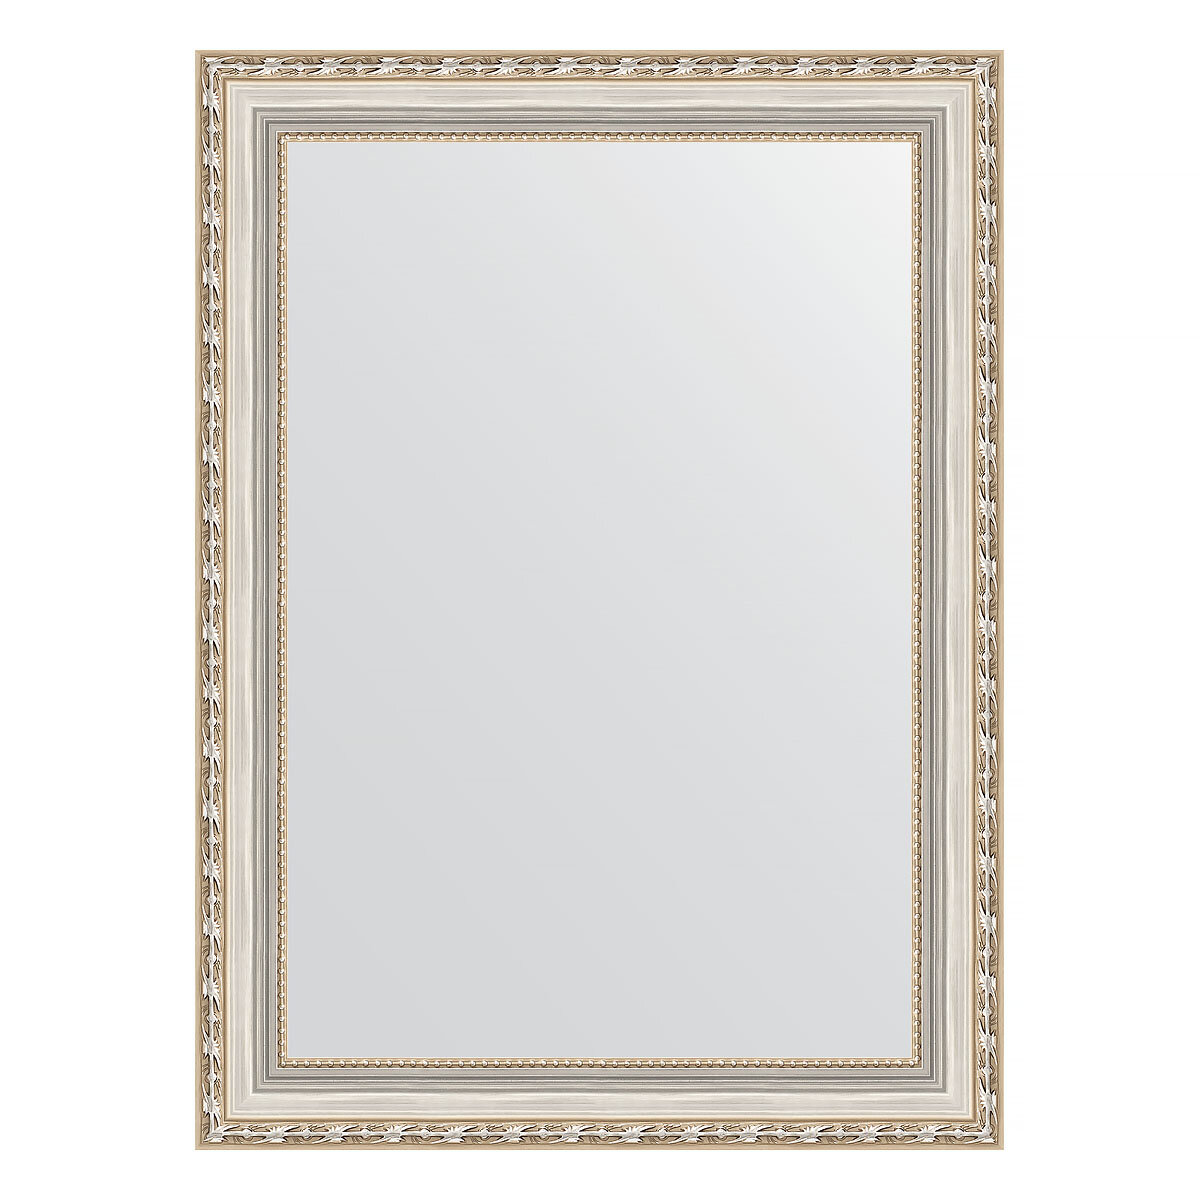 Зеркало настенное EVOFORM в багетной раме версаль серебро, 55х75 см, для гостиной, прихожей, кабинета, спальни и ванной комнаты, BY 3046